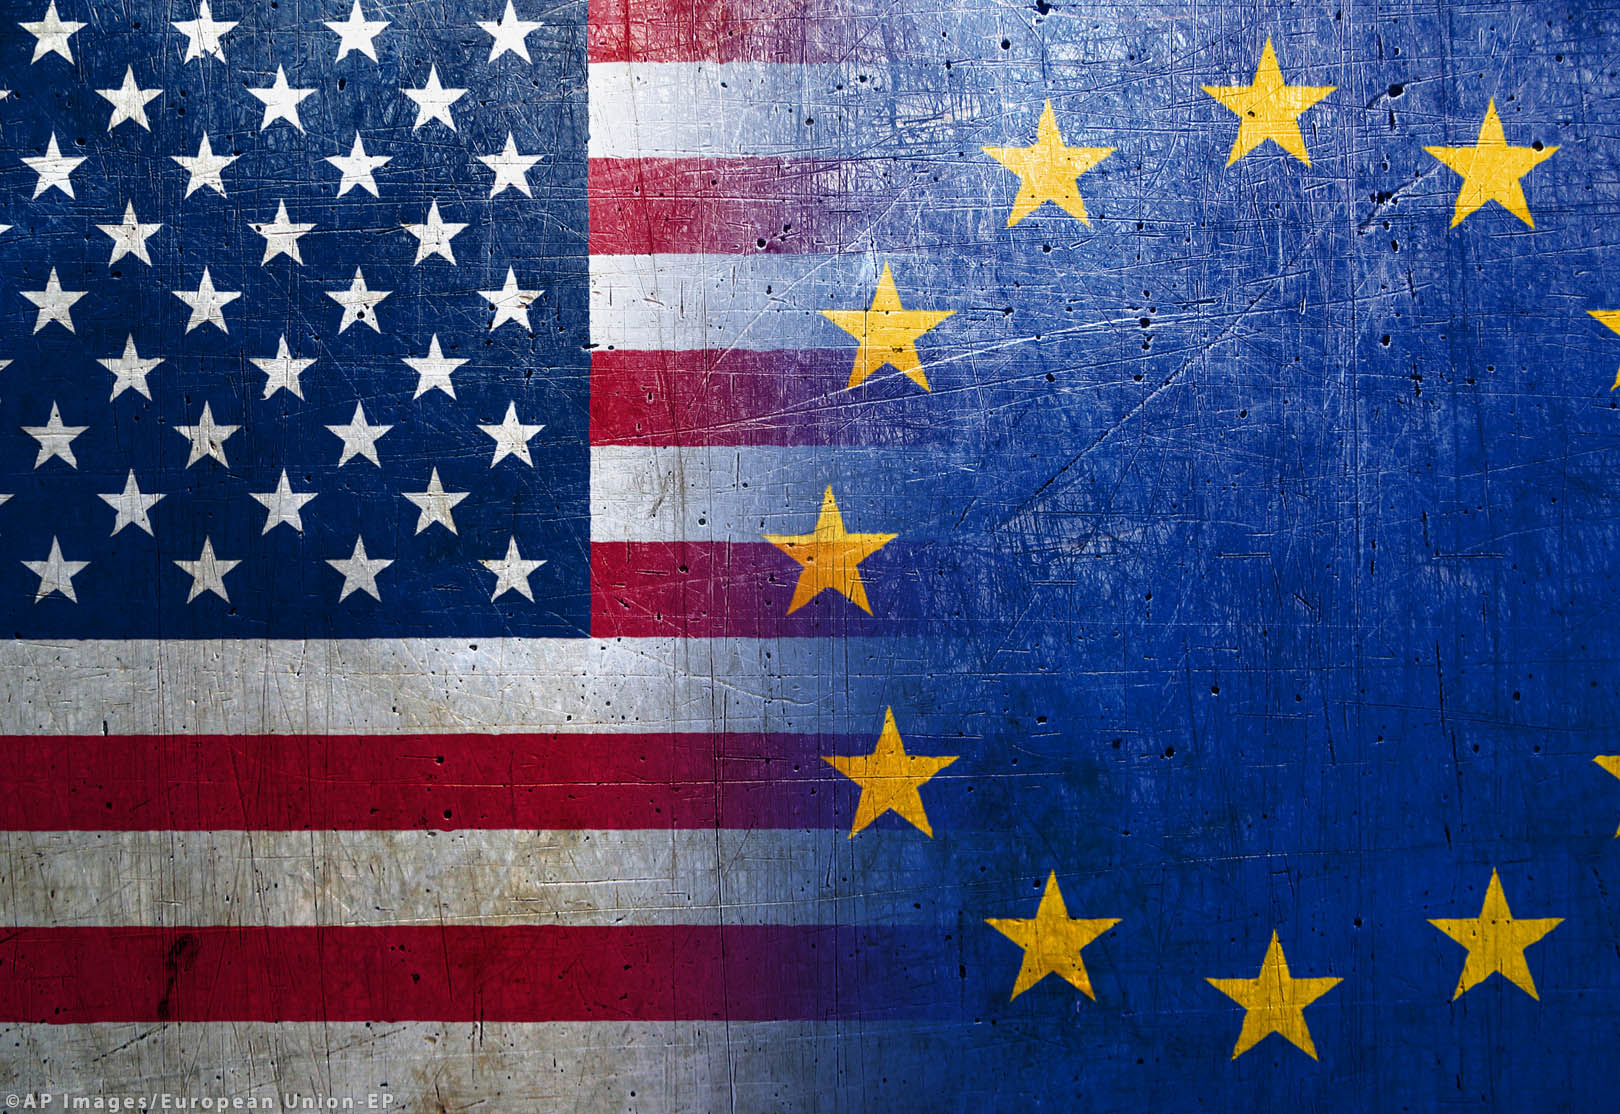 Las relaciones económicas entre EEUU y Europa: ¿Mejoradas o estancadas?